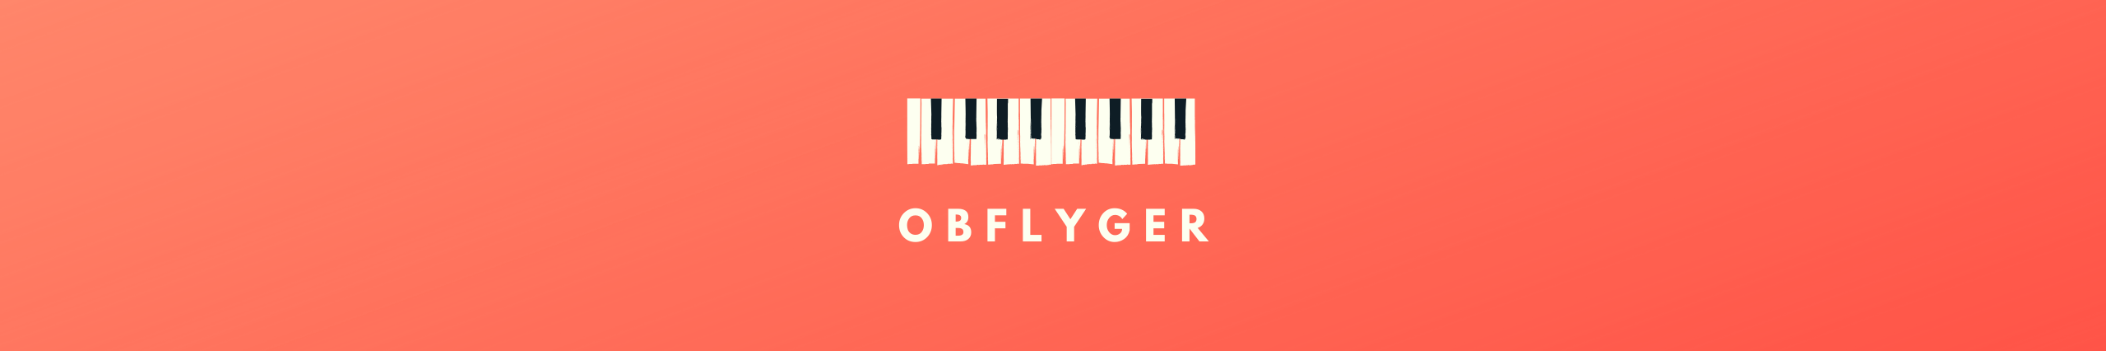 ObFlyger